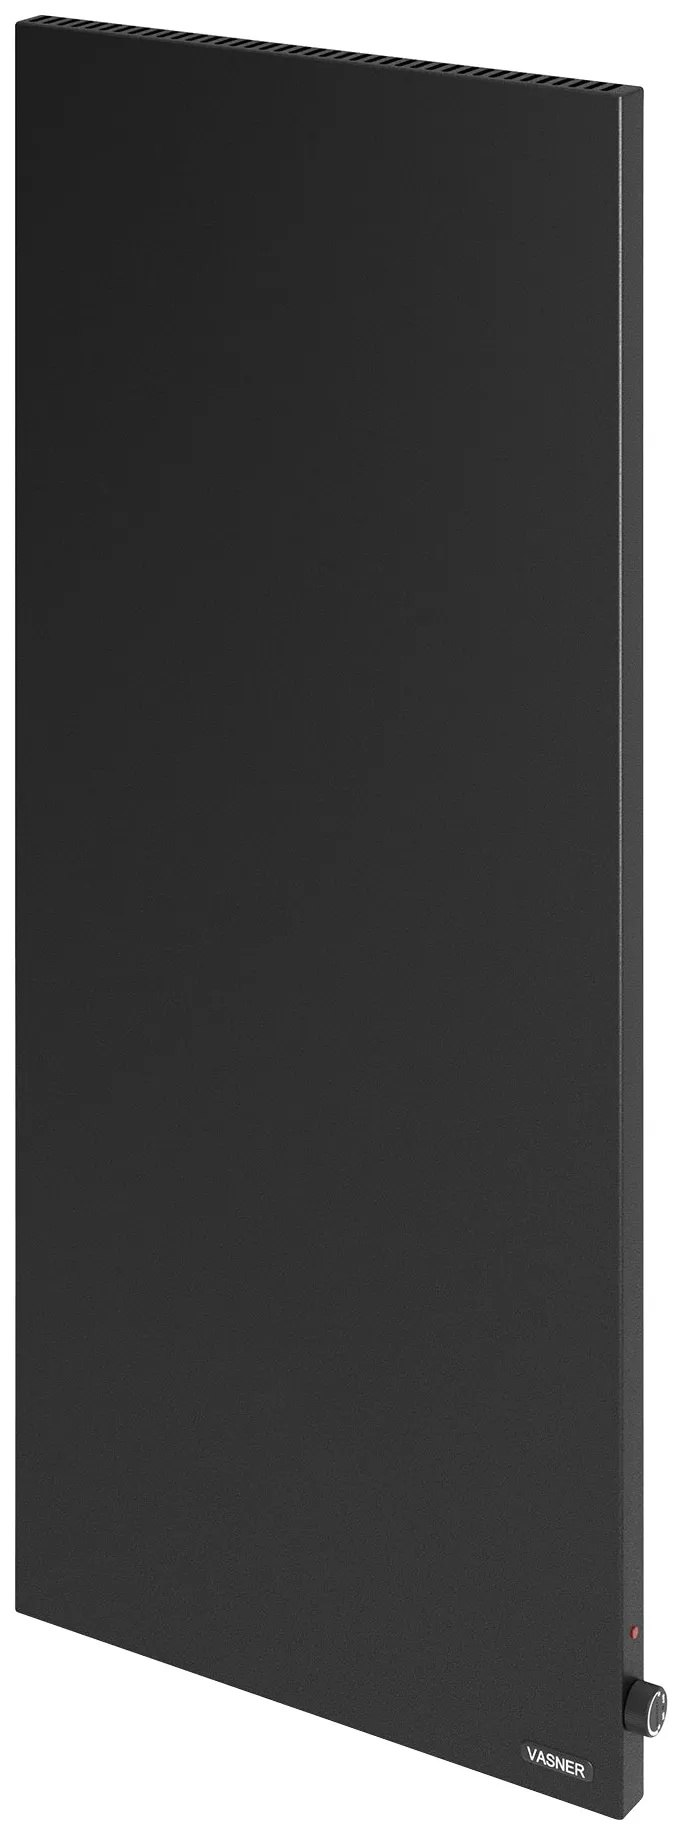 VASNER Infrarotheizung "Konvi VE schwarz" Heizkörper Gr. B/H/T: 60 cm x 140 cm x 4 cm, 1200 W, unten-rechts, schwarz Heizkörper